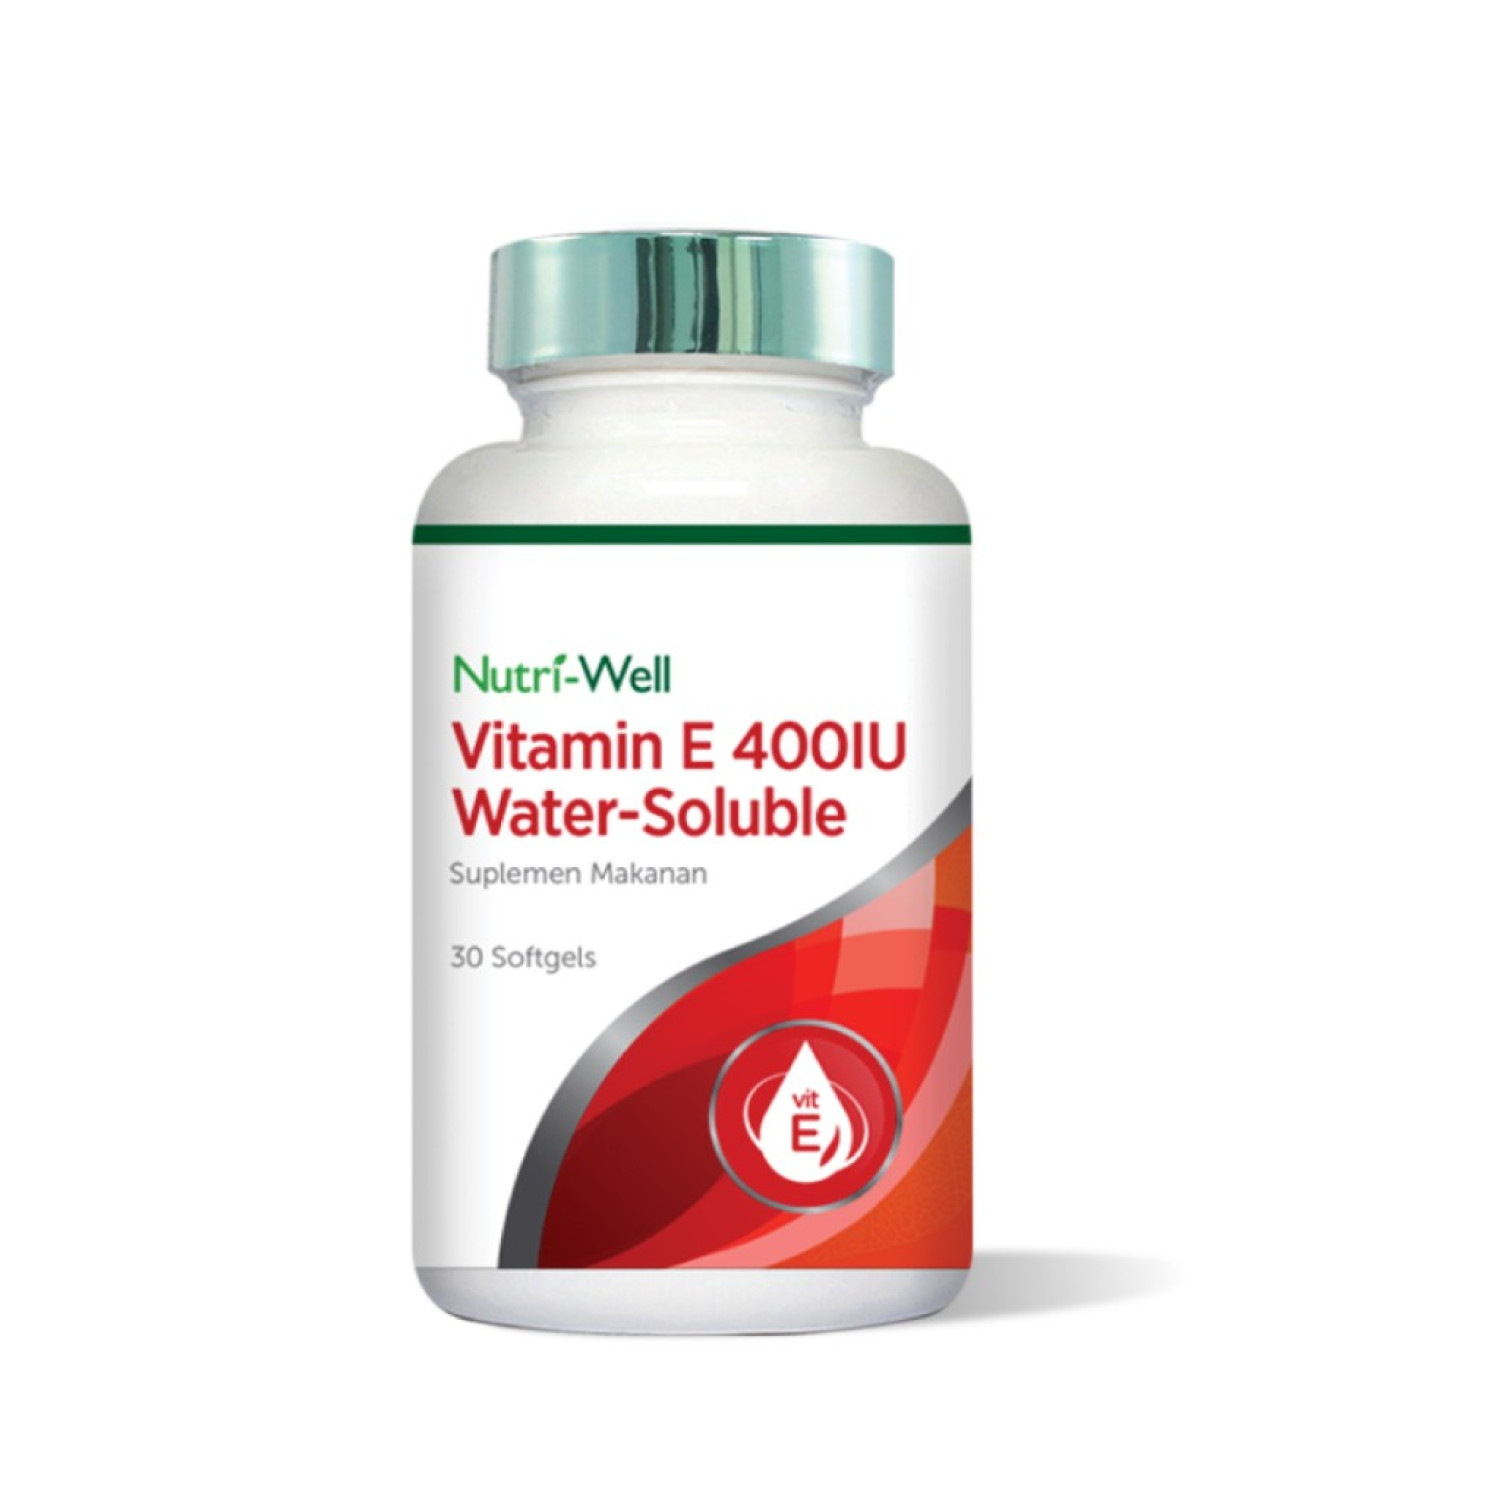 nutriwell-vitamin-e-400-iu-water-soluble-30-softgels-6543266b2aebb.jpeg